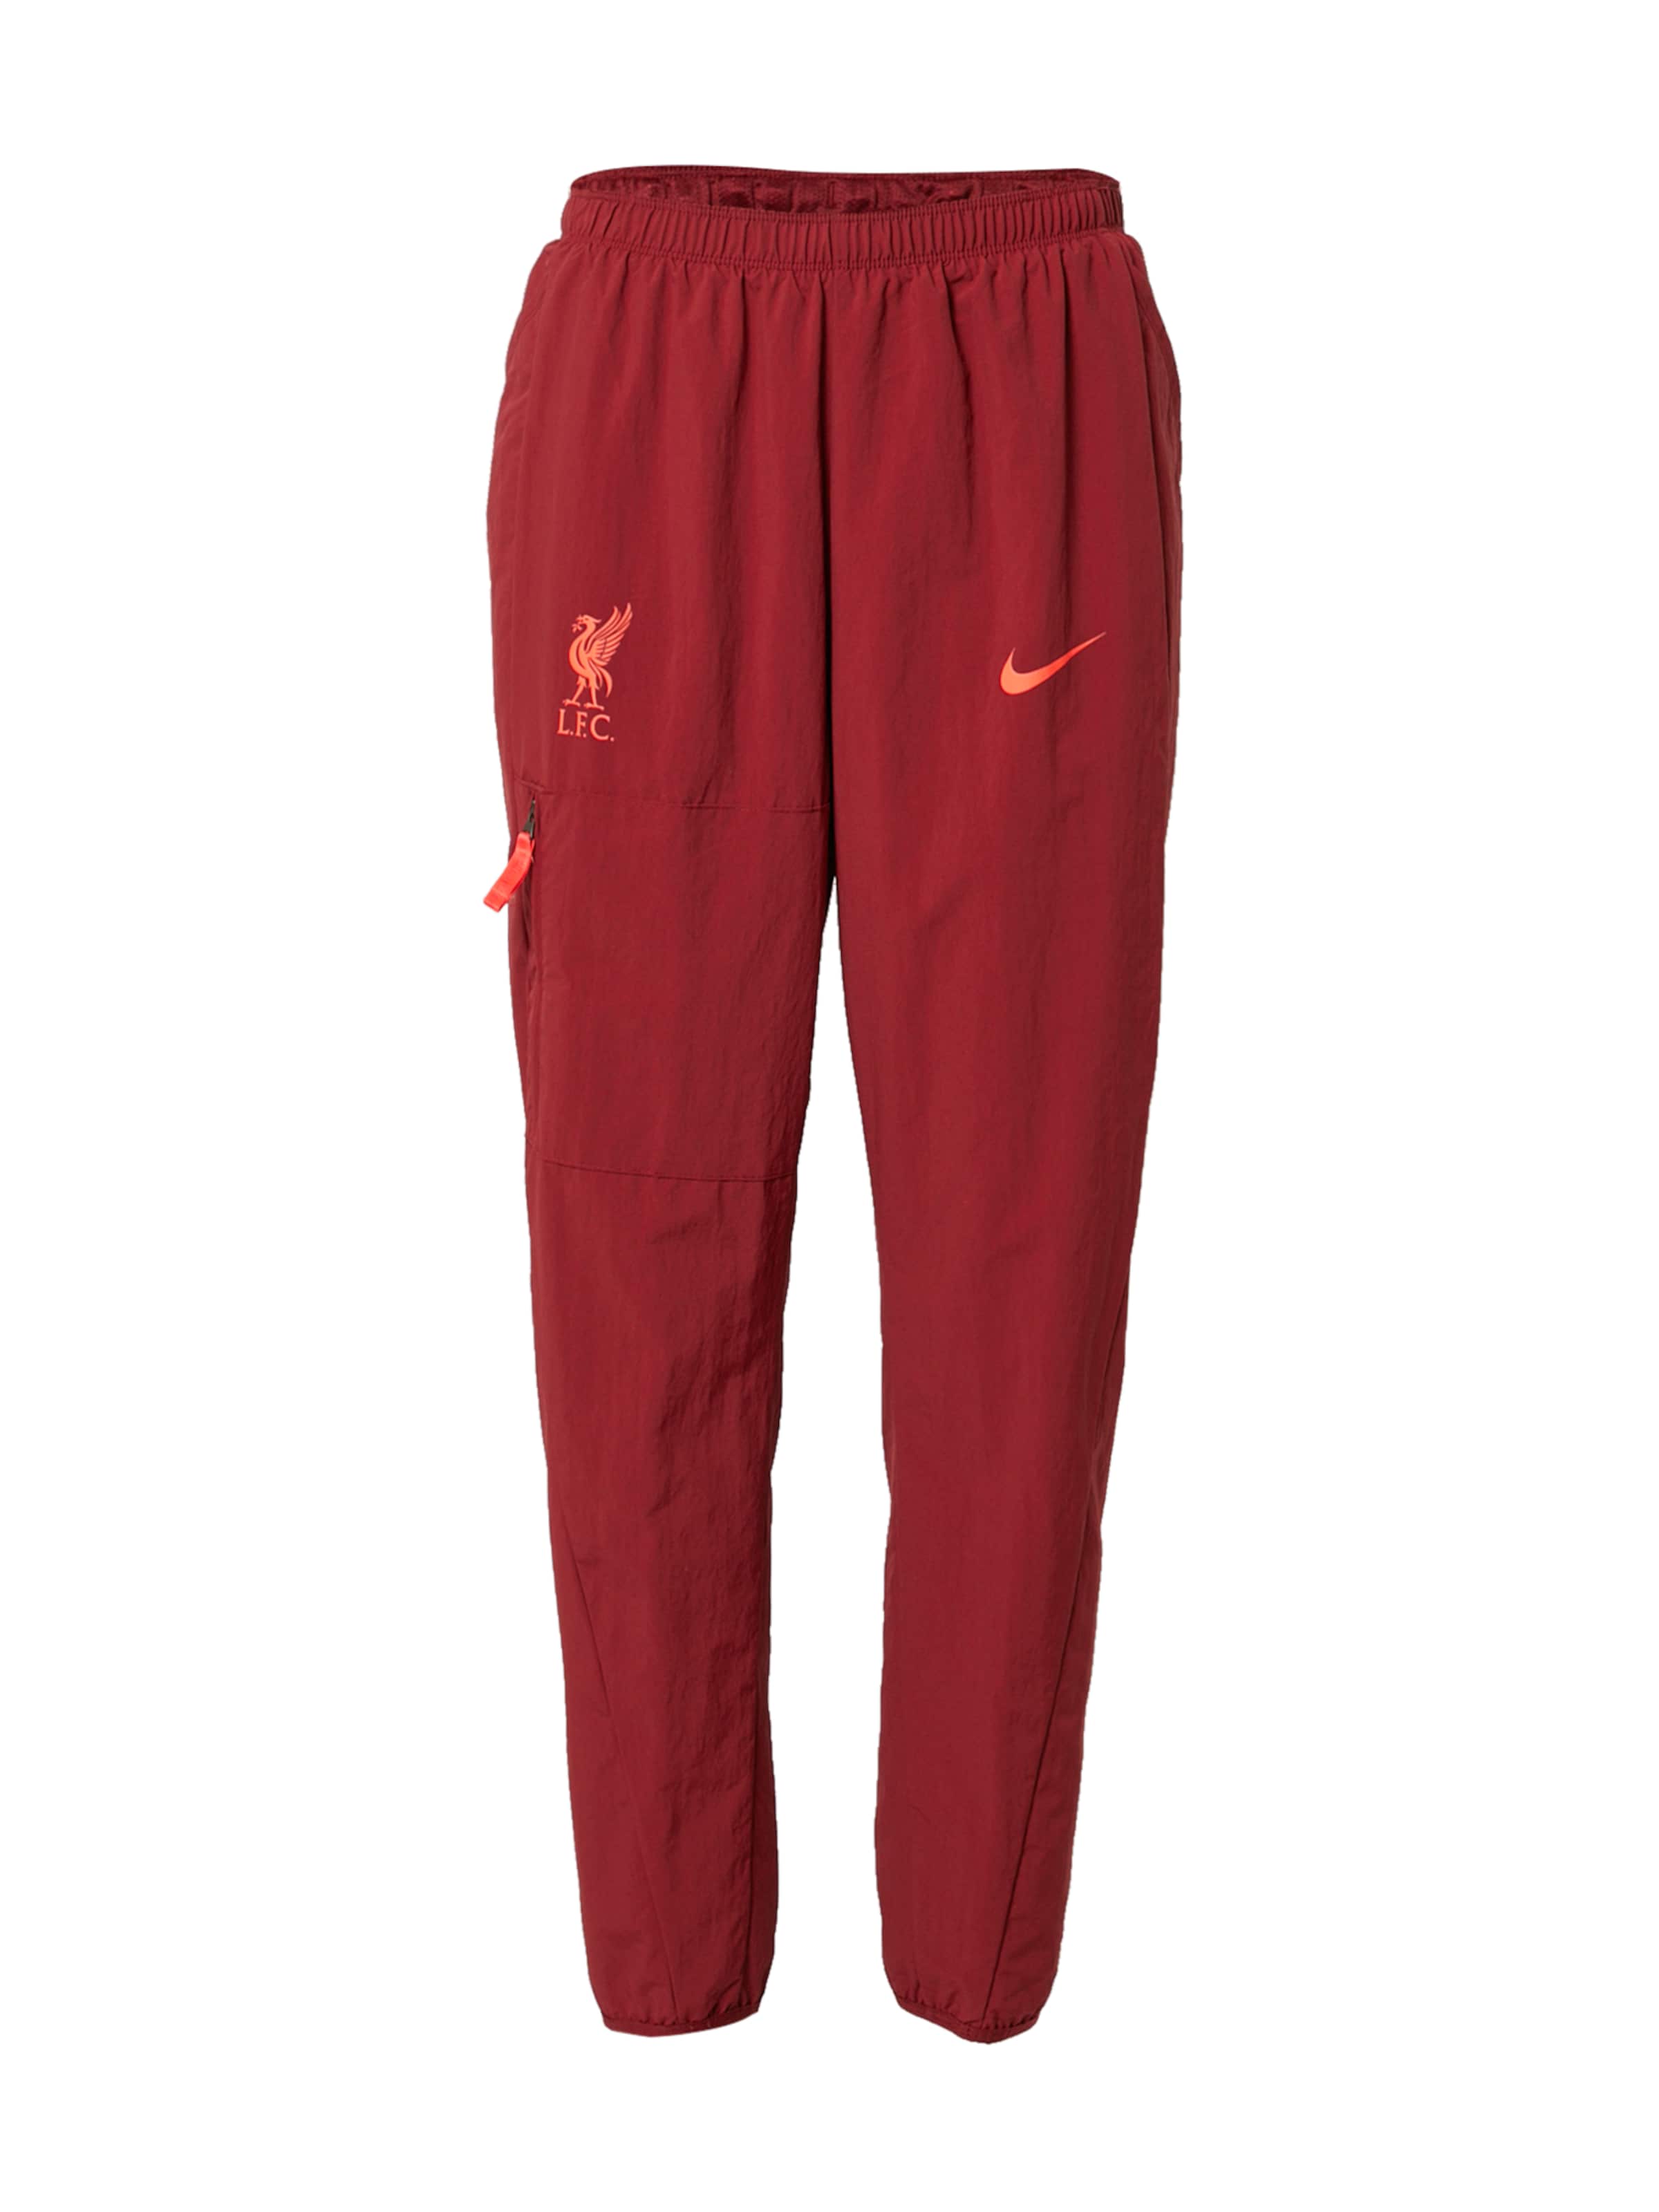 Tipi di sport Donna NIKE Pantaloni sportivi Liverpool FC in Rosso Scuro, Rosso 